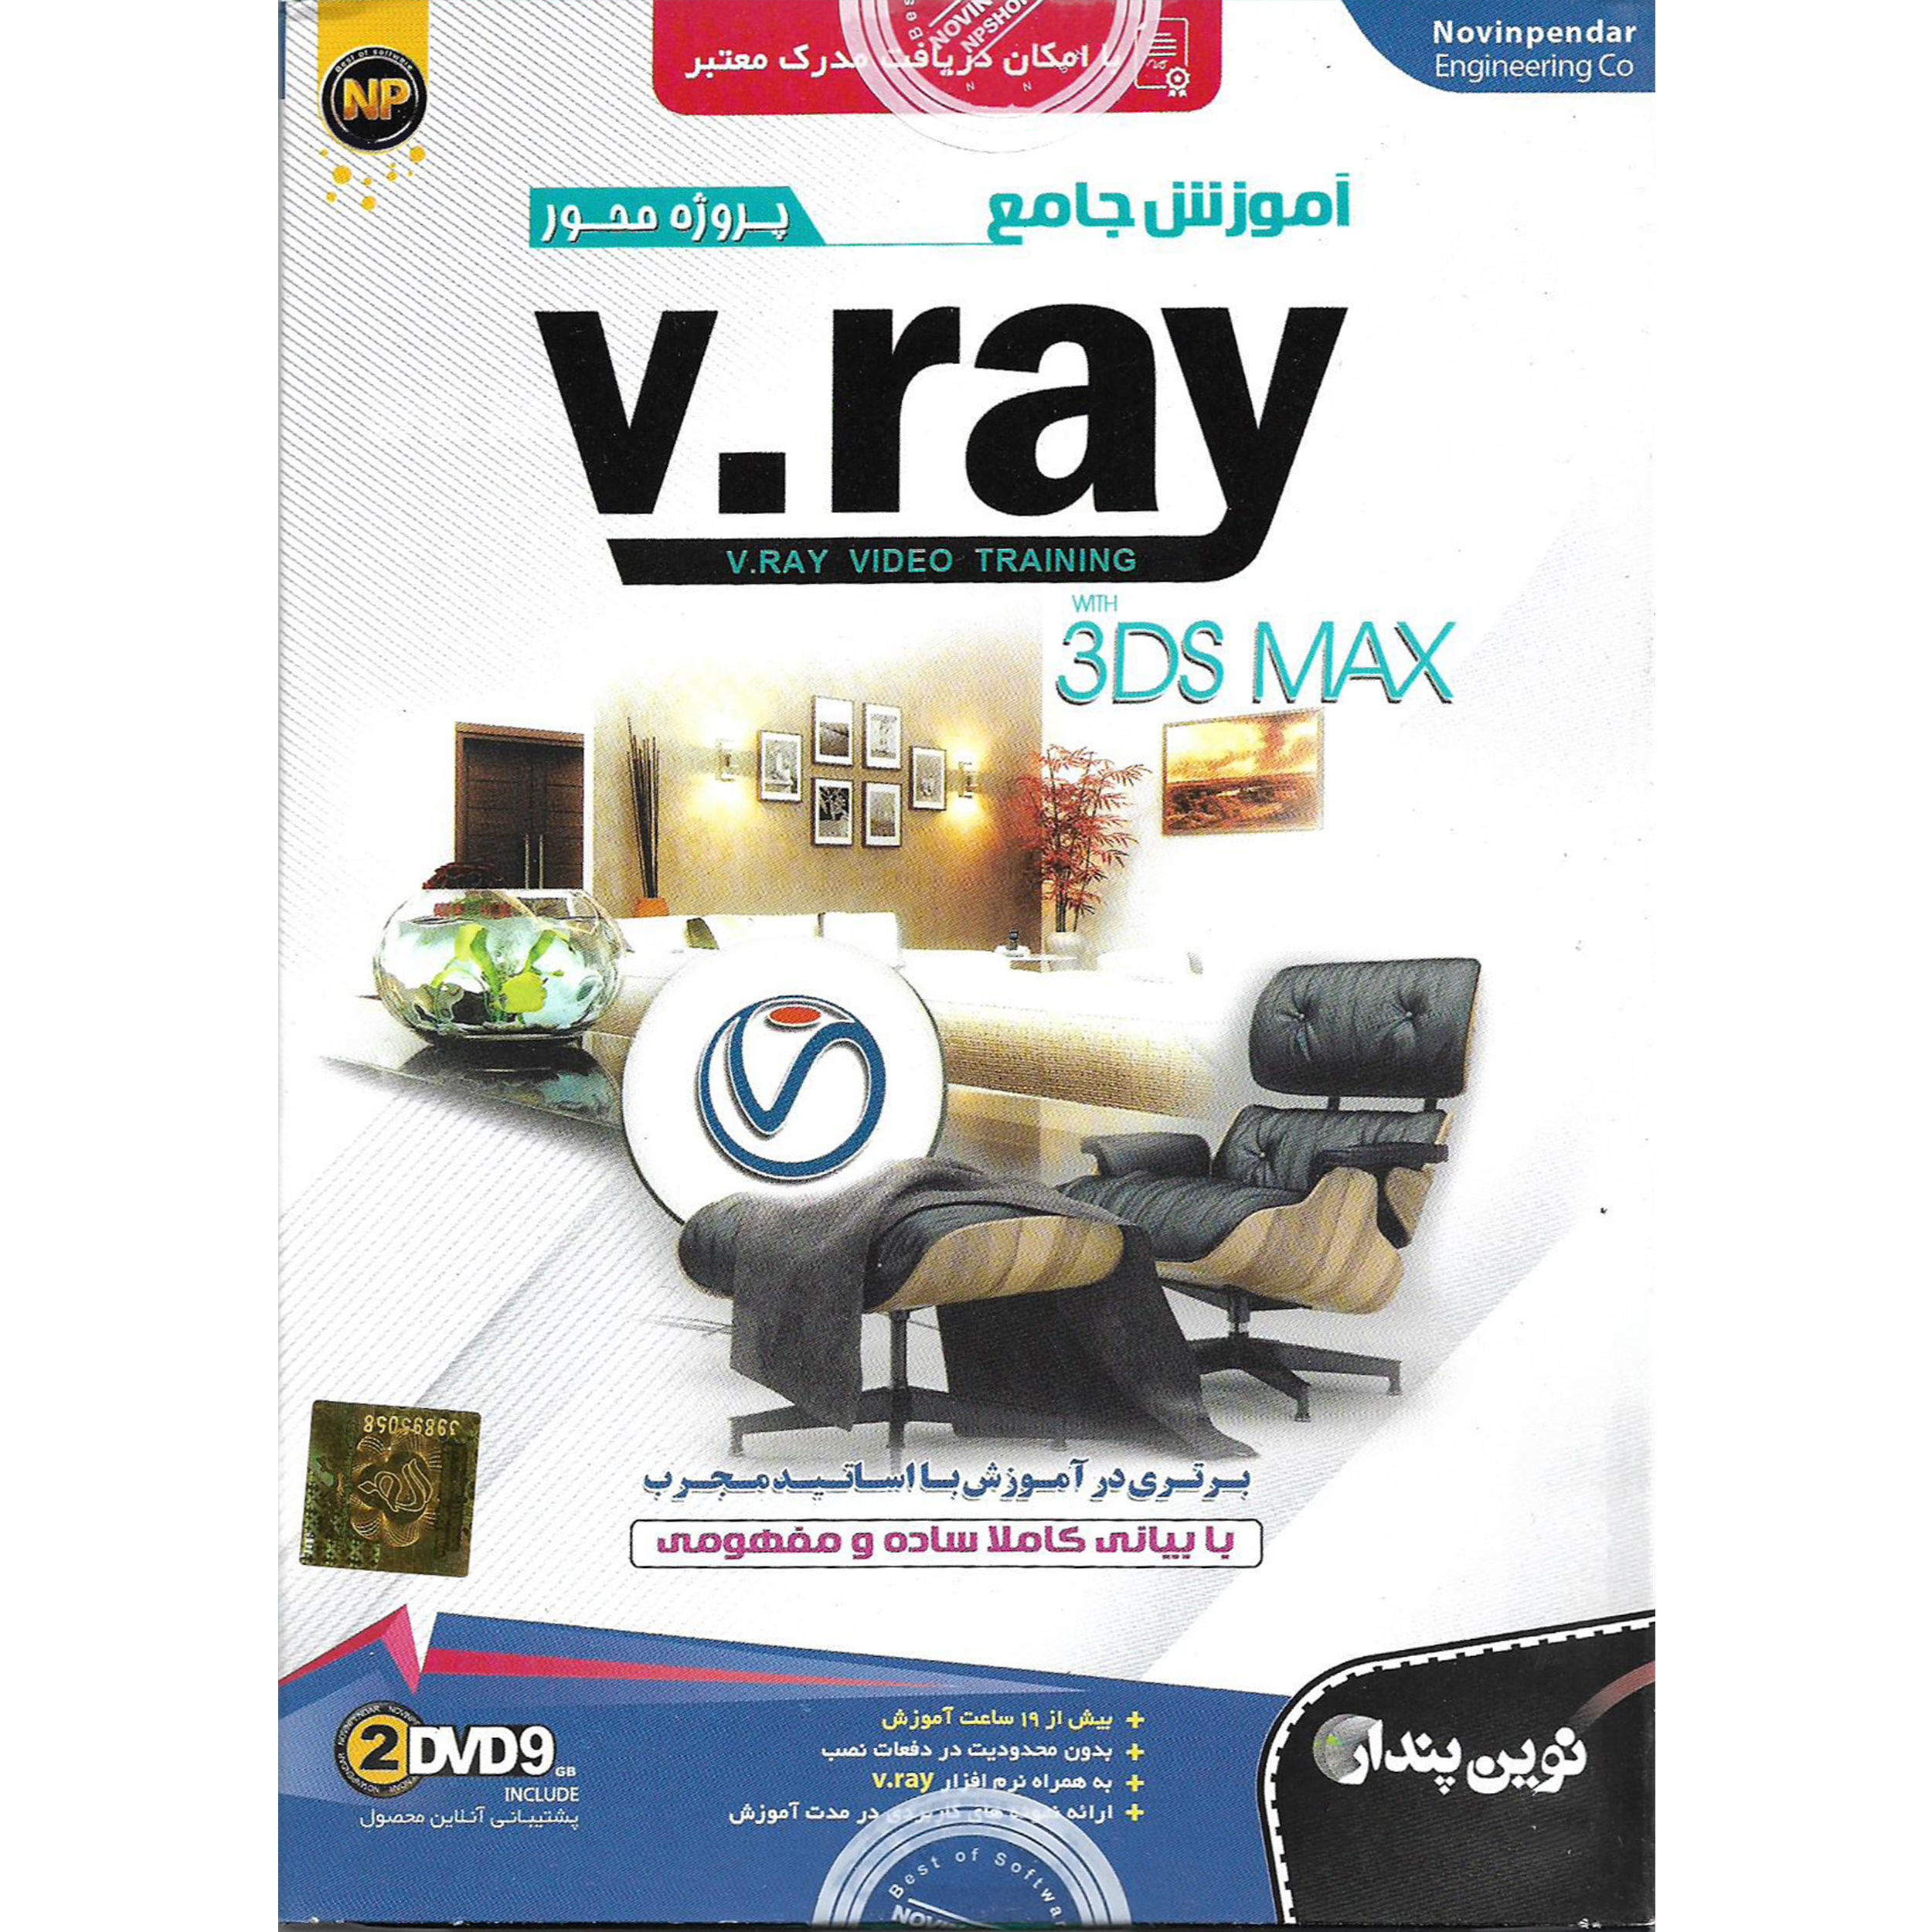 نرم افزار آموزش جامع پروژه محور VRAY with 3DS MAX نشر نوین پندار